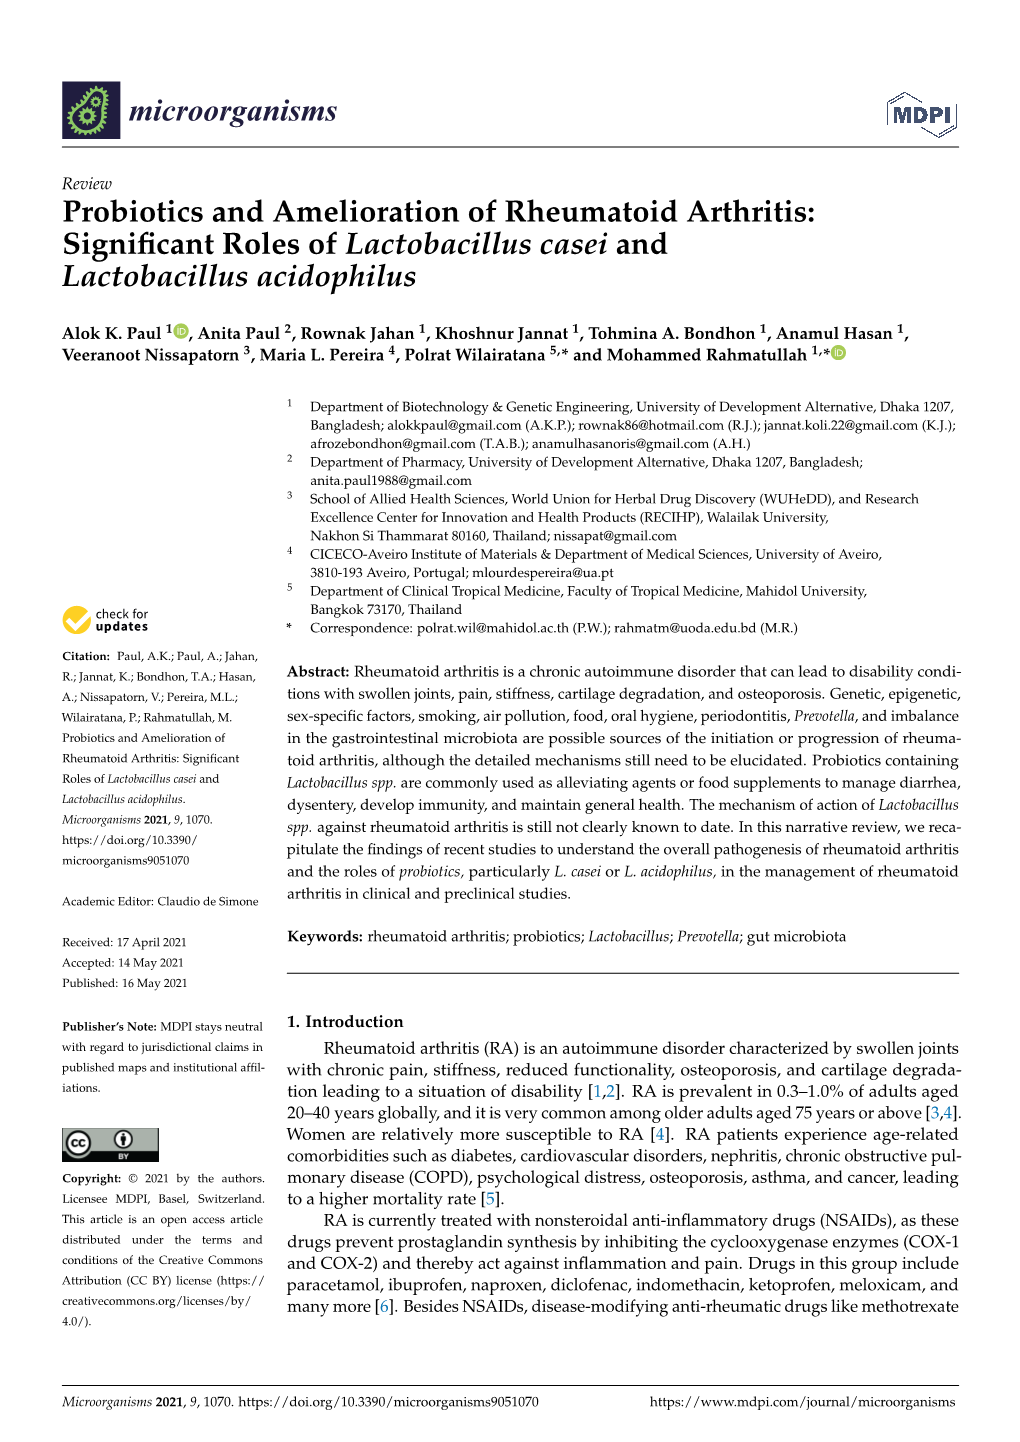 Probiotics and Amelioration of Rheumatoid Arthritis: Signiﬁcant Roles of Lactobacillus Casei and Lactobacillus Acidophilus